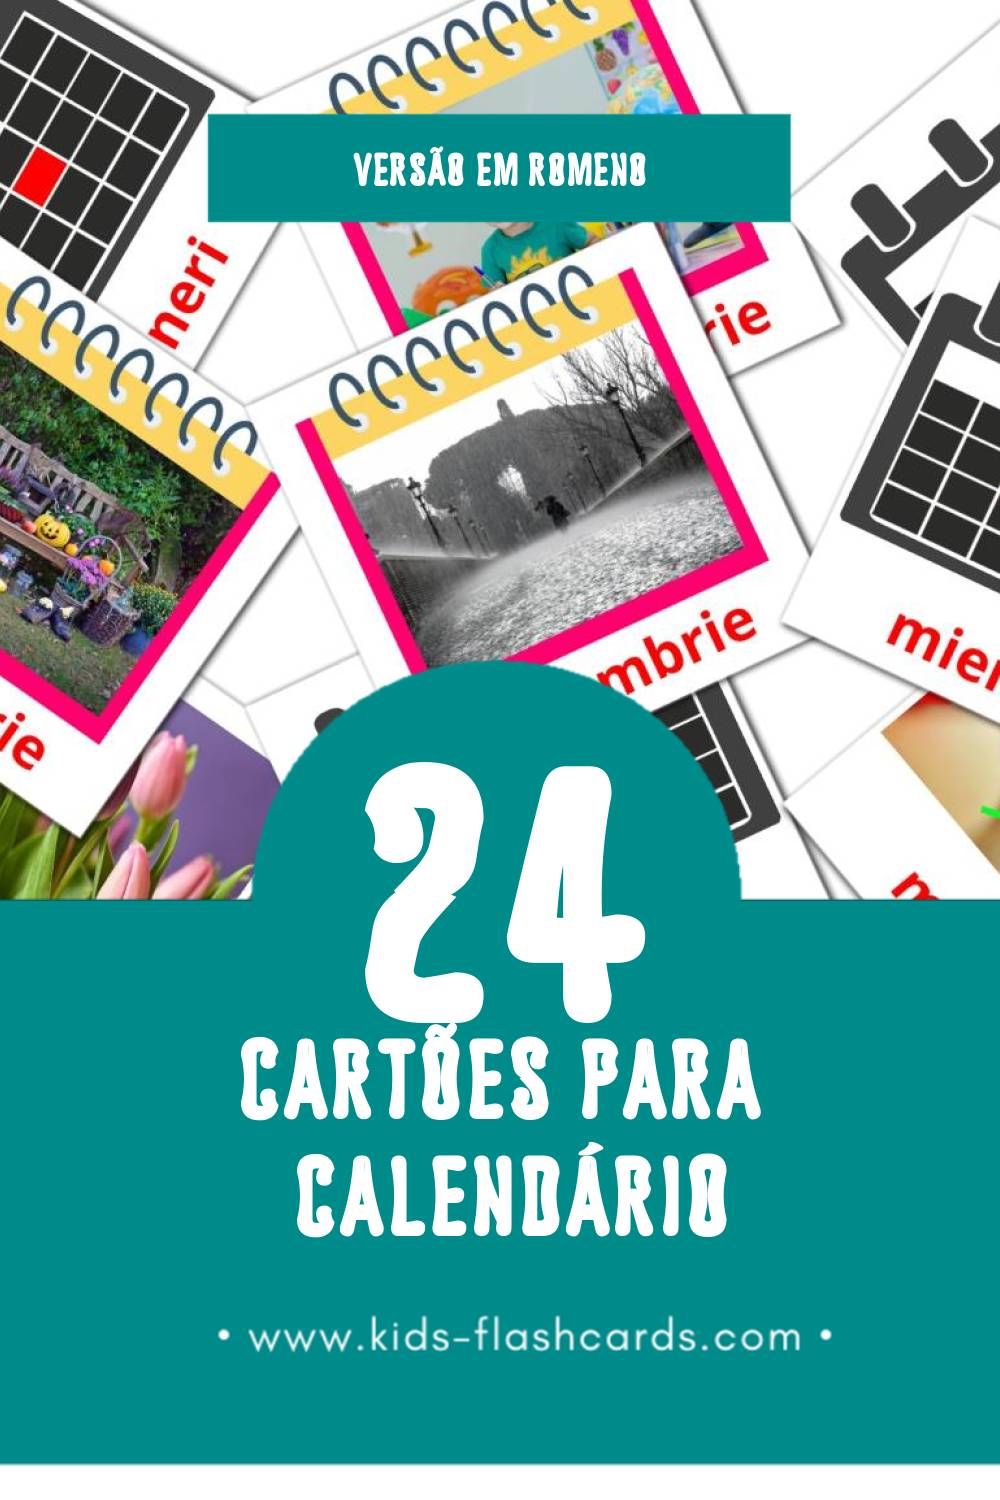 Flashcards de Calendar Visuais para Toddlers (24 cartões em Romeno)